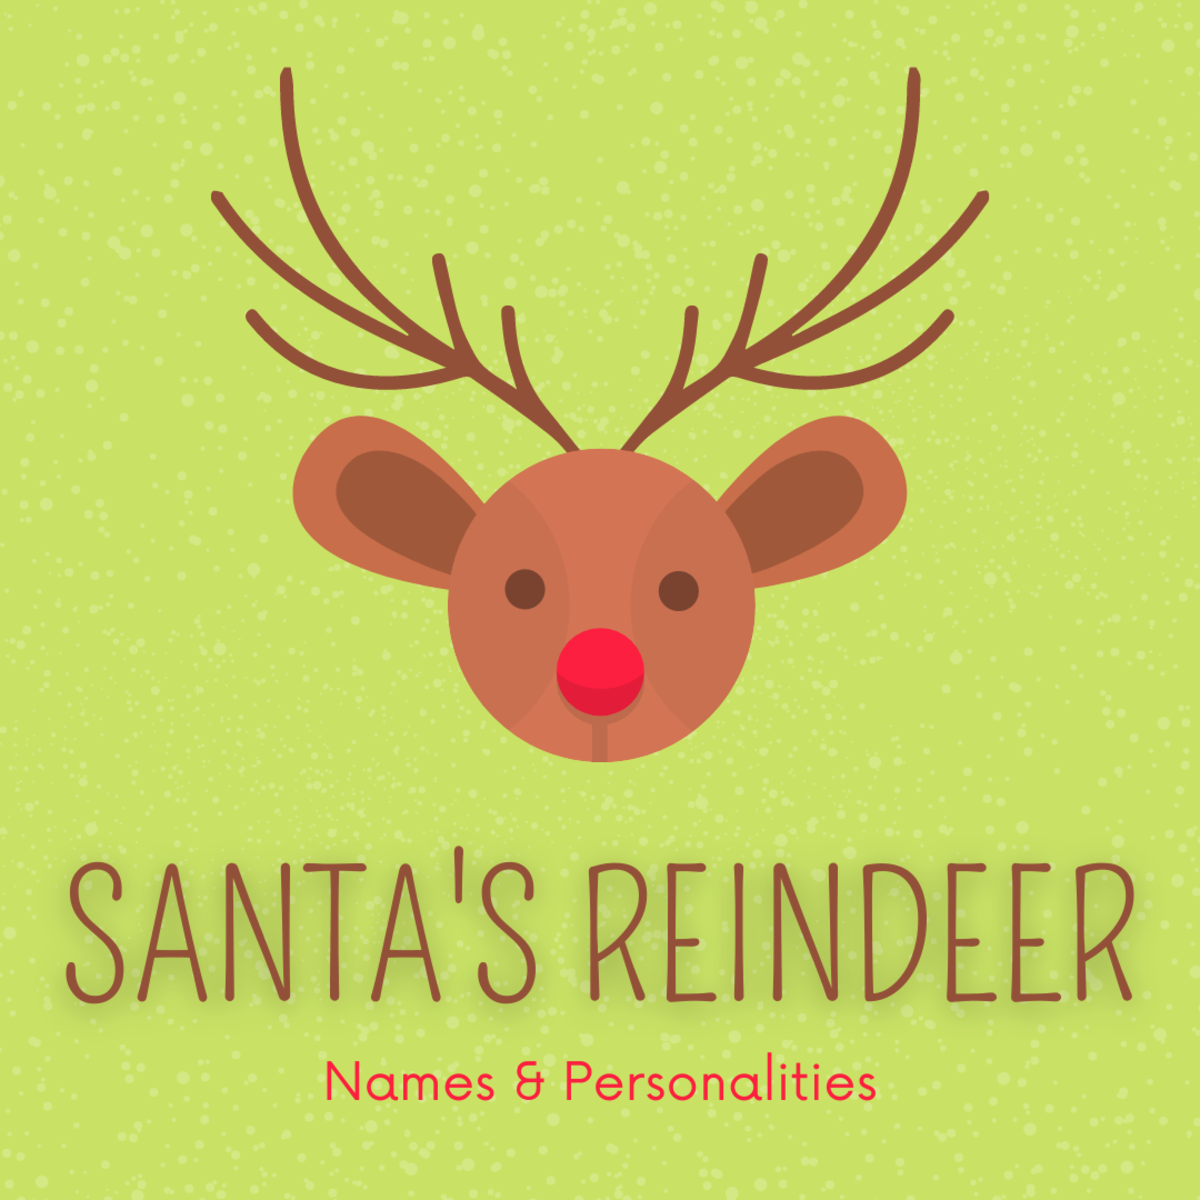 santas-reindeer-images